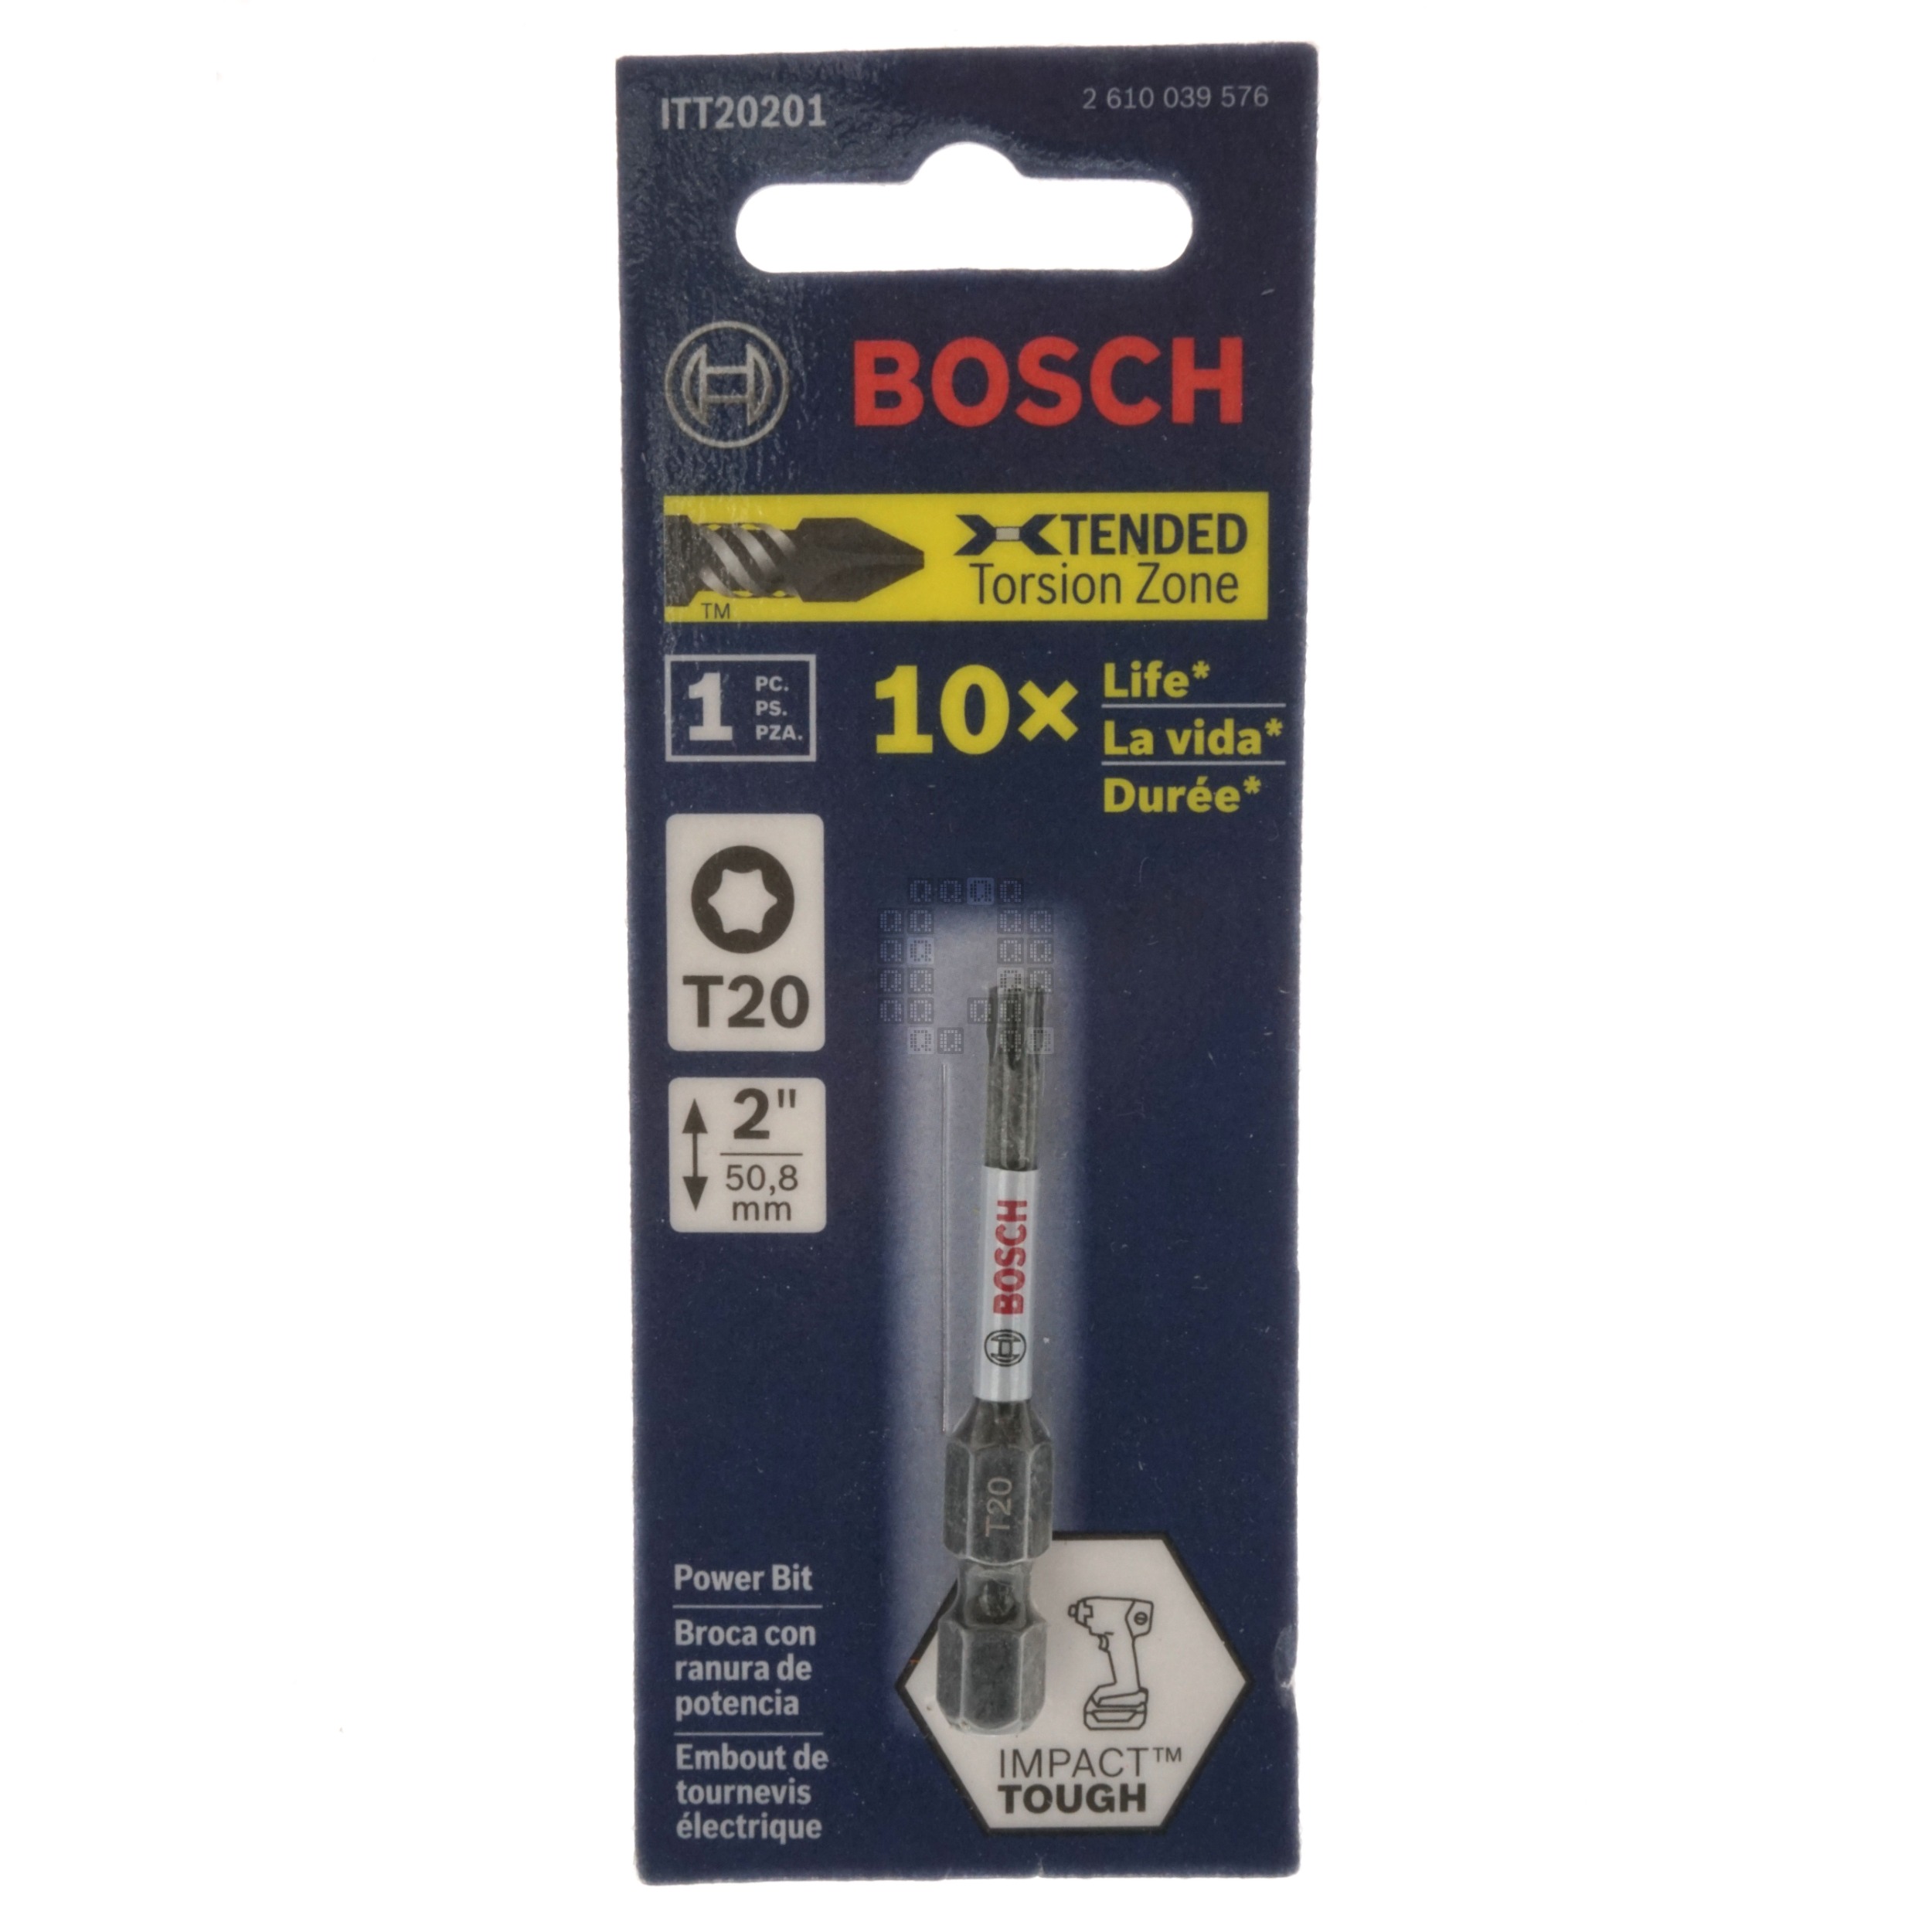 Bosch ITT20201 2610039576 T20 TORX Impact Tough Power Bit, 2" Length